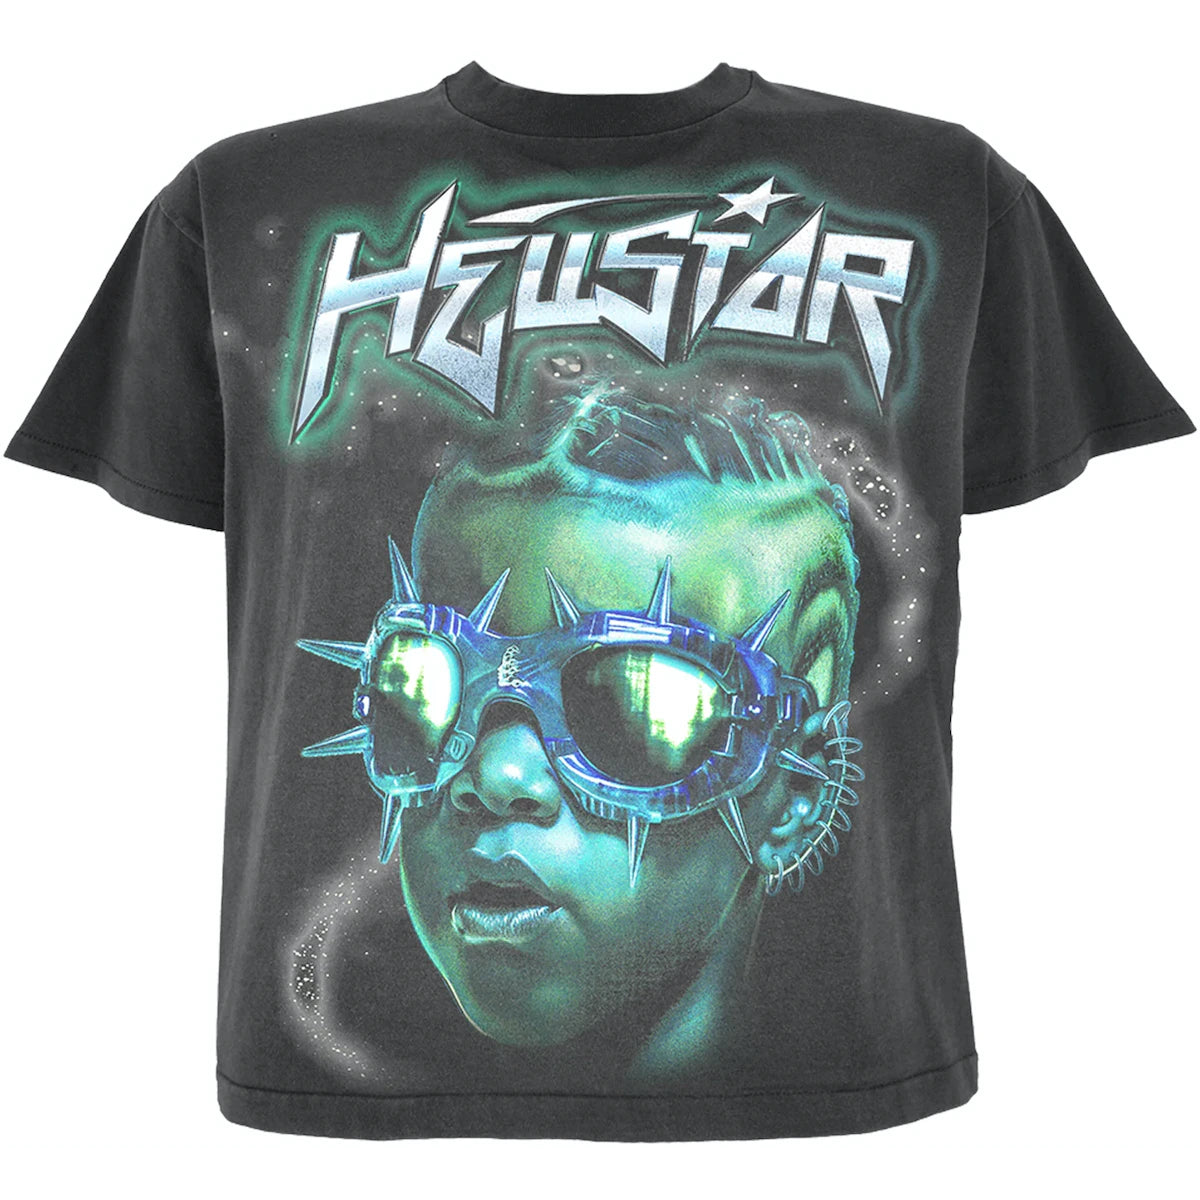 Hellstar The Future Black Tee